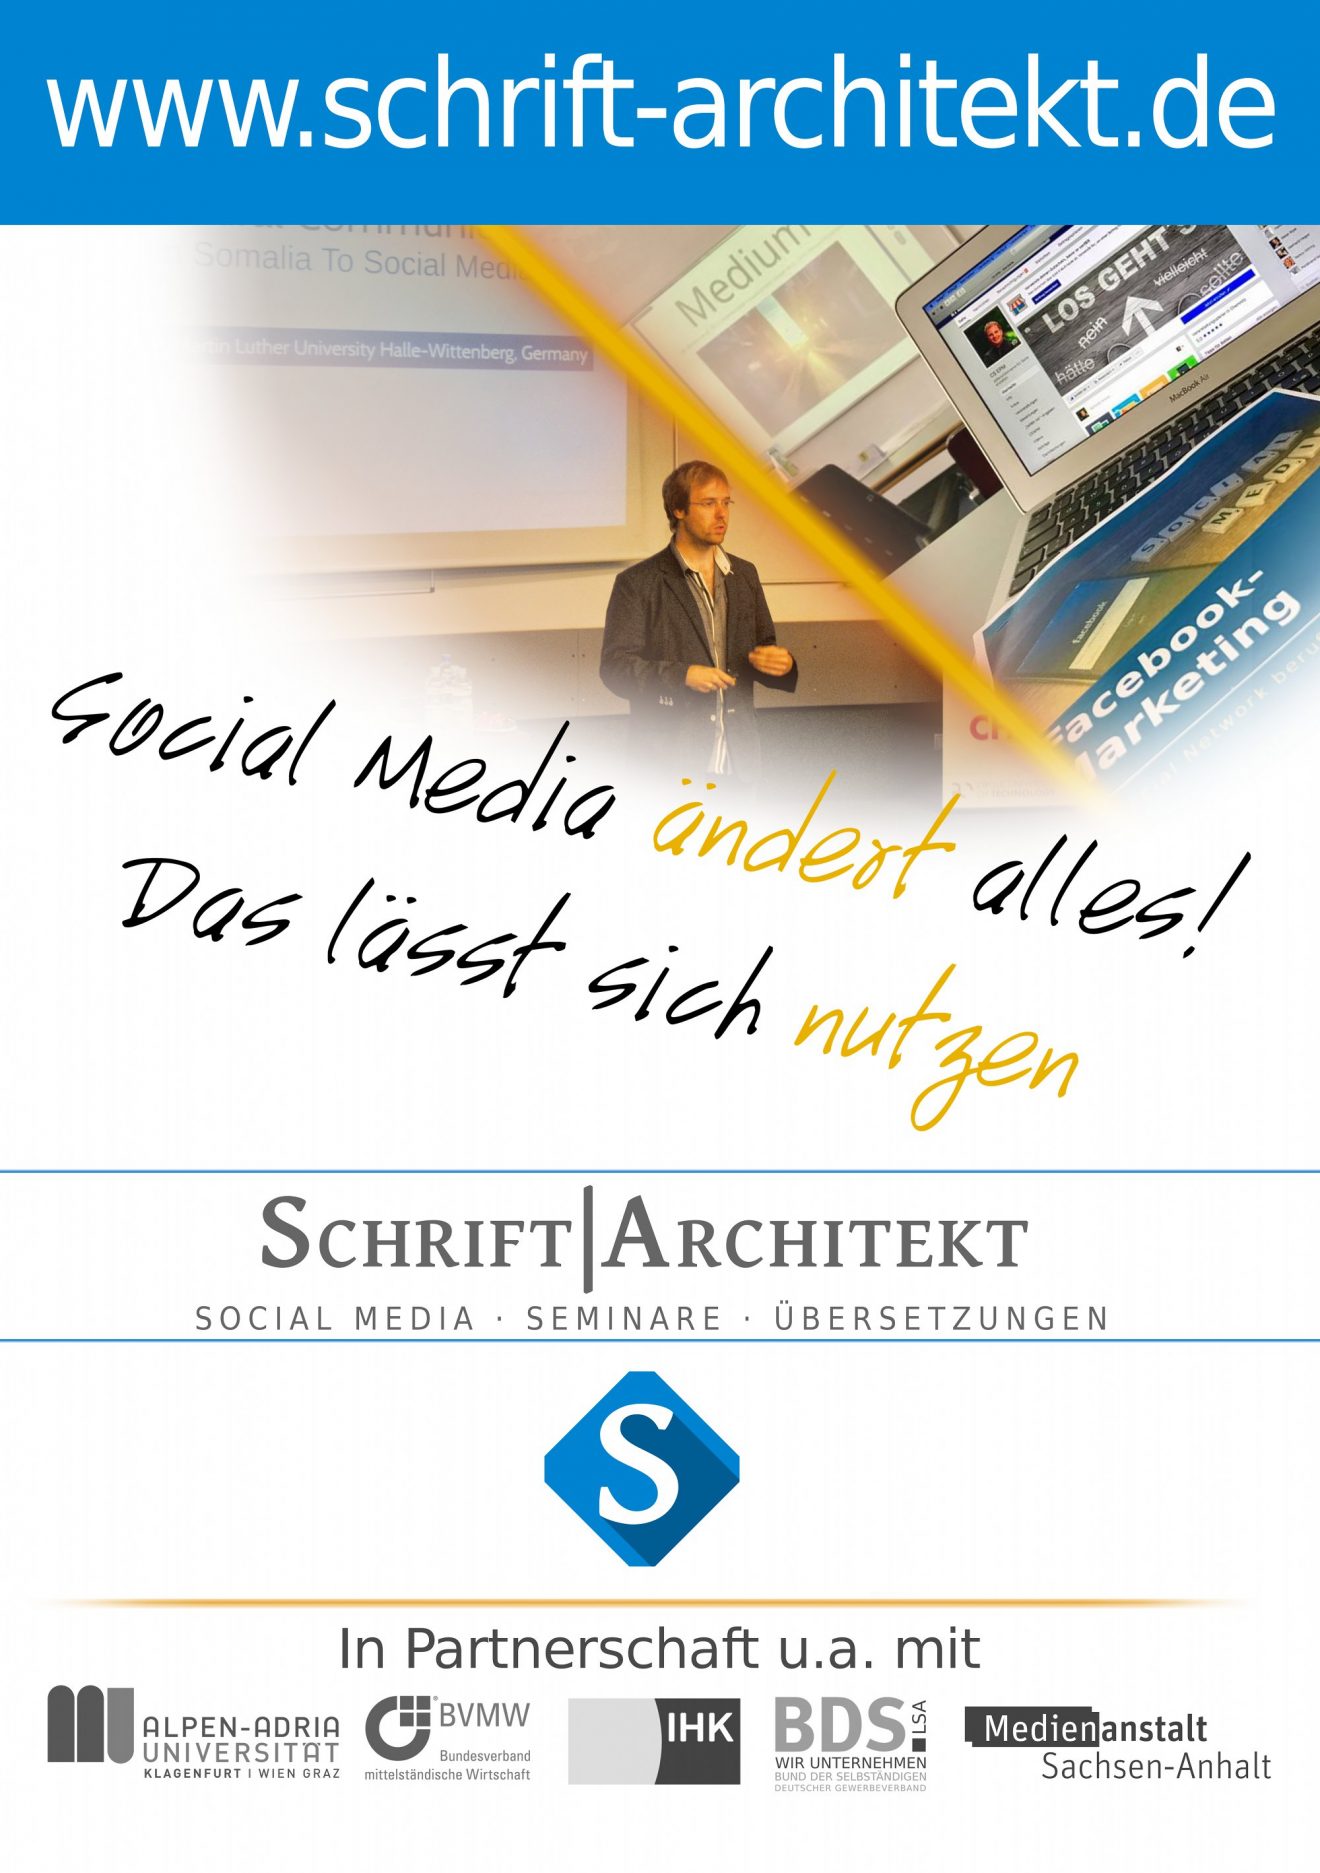 Agentur Schrift-Architekt.de